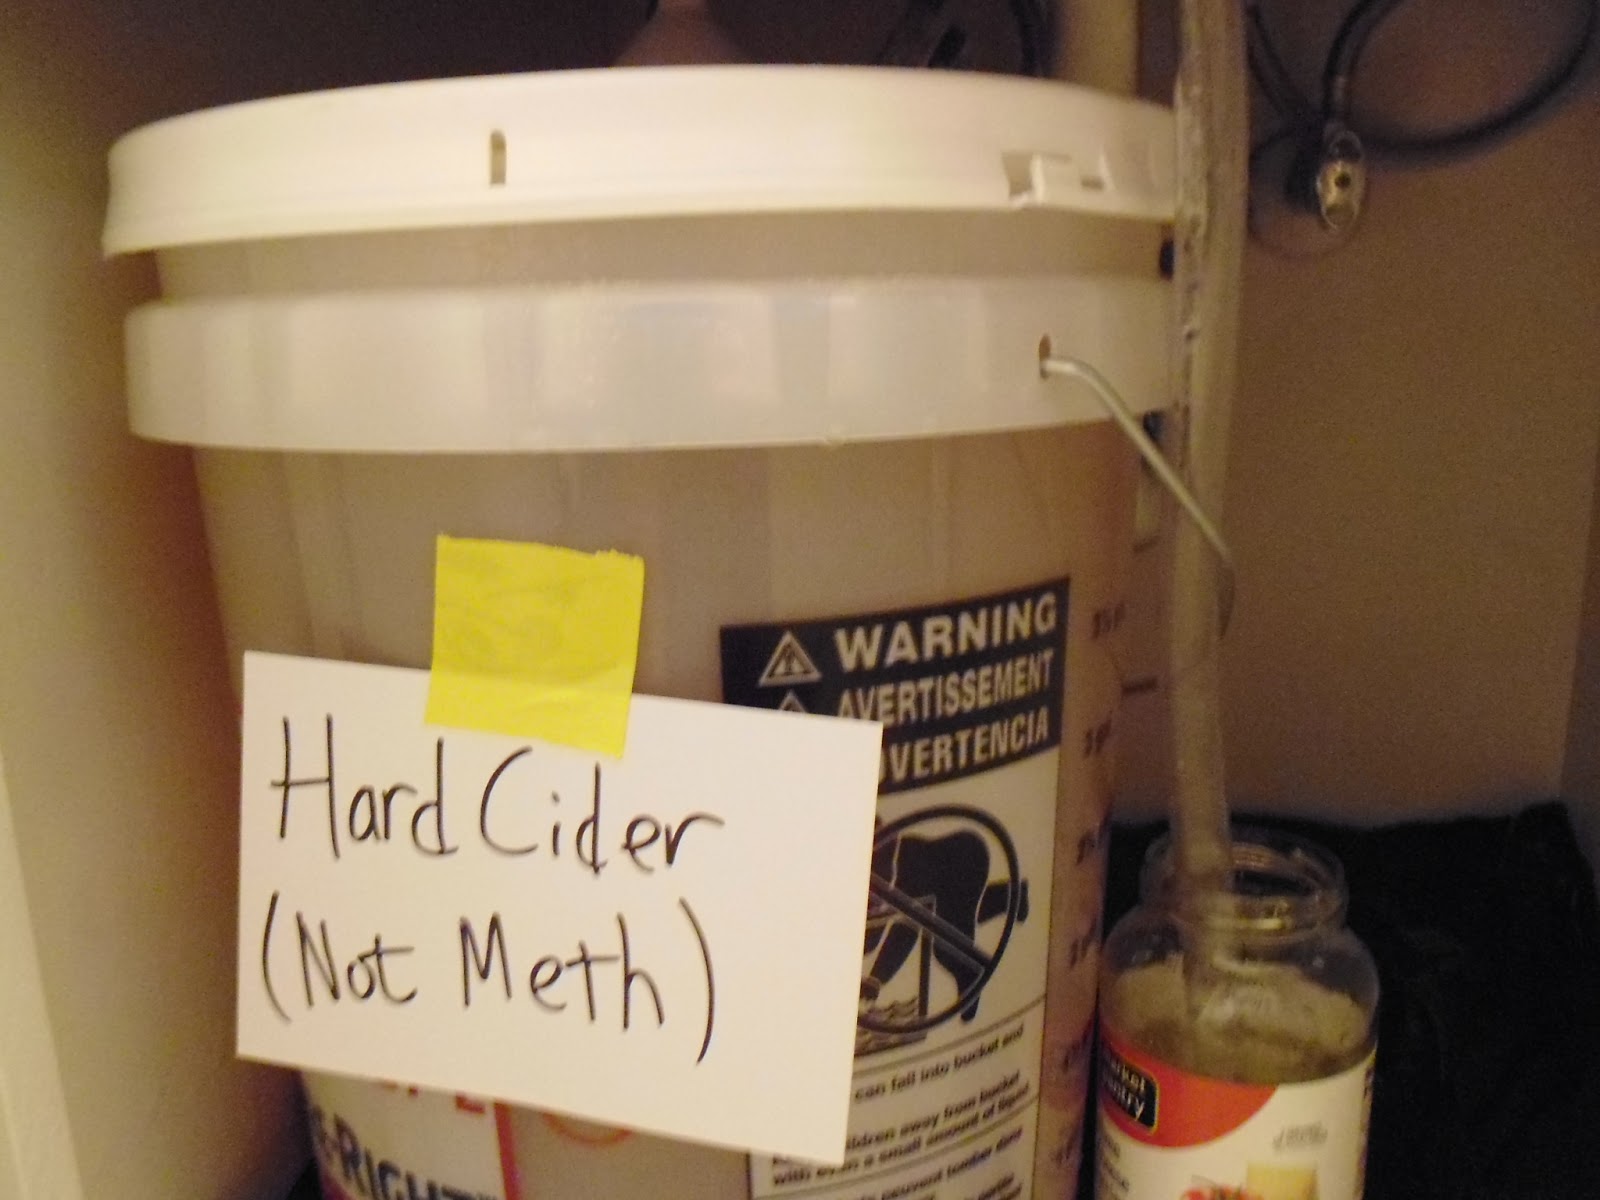 Hard Cider Not Meth